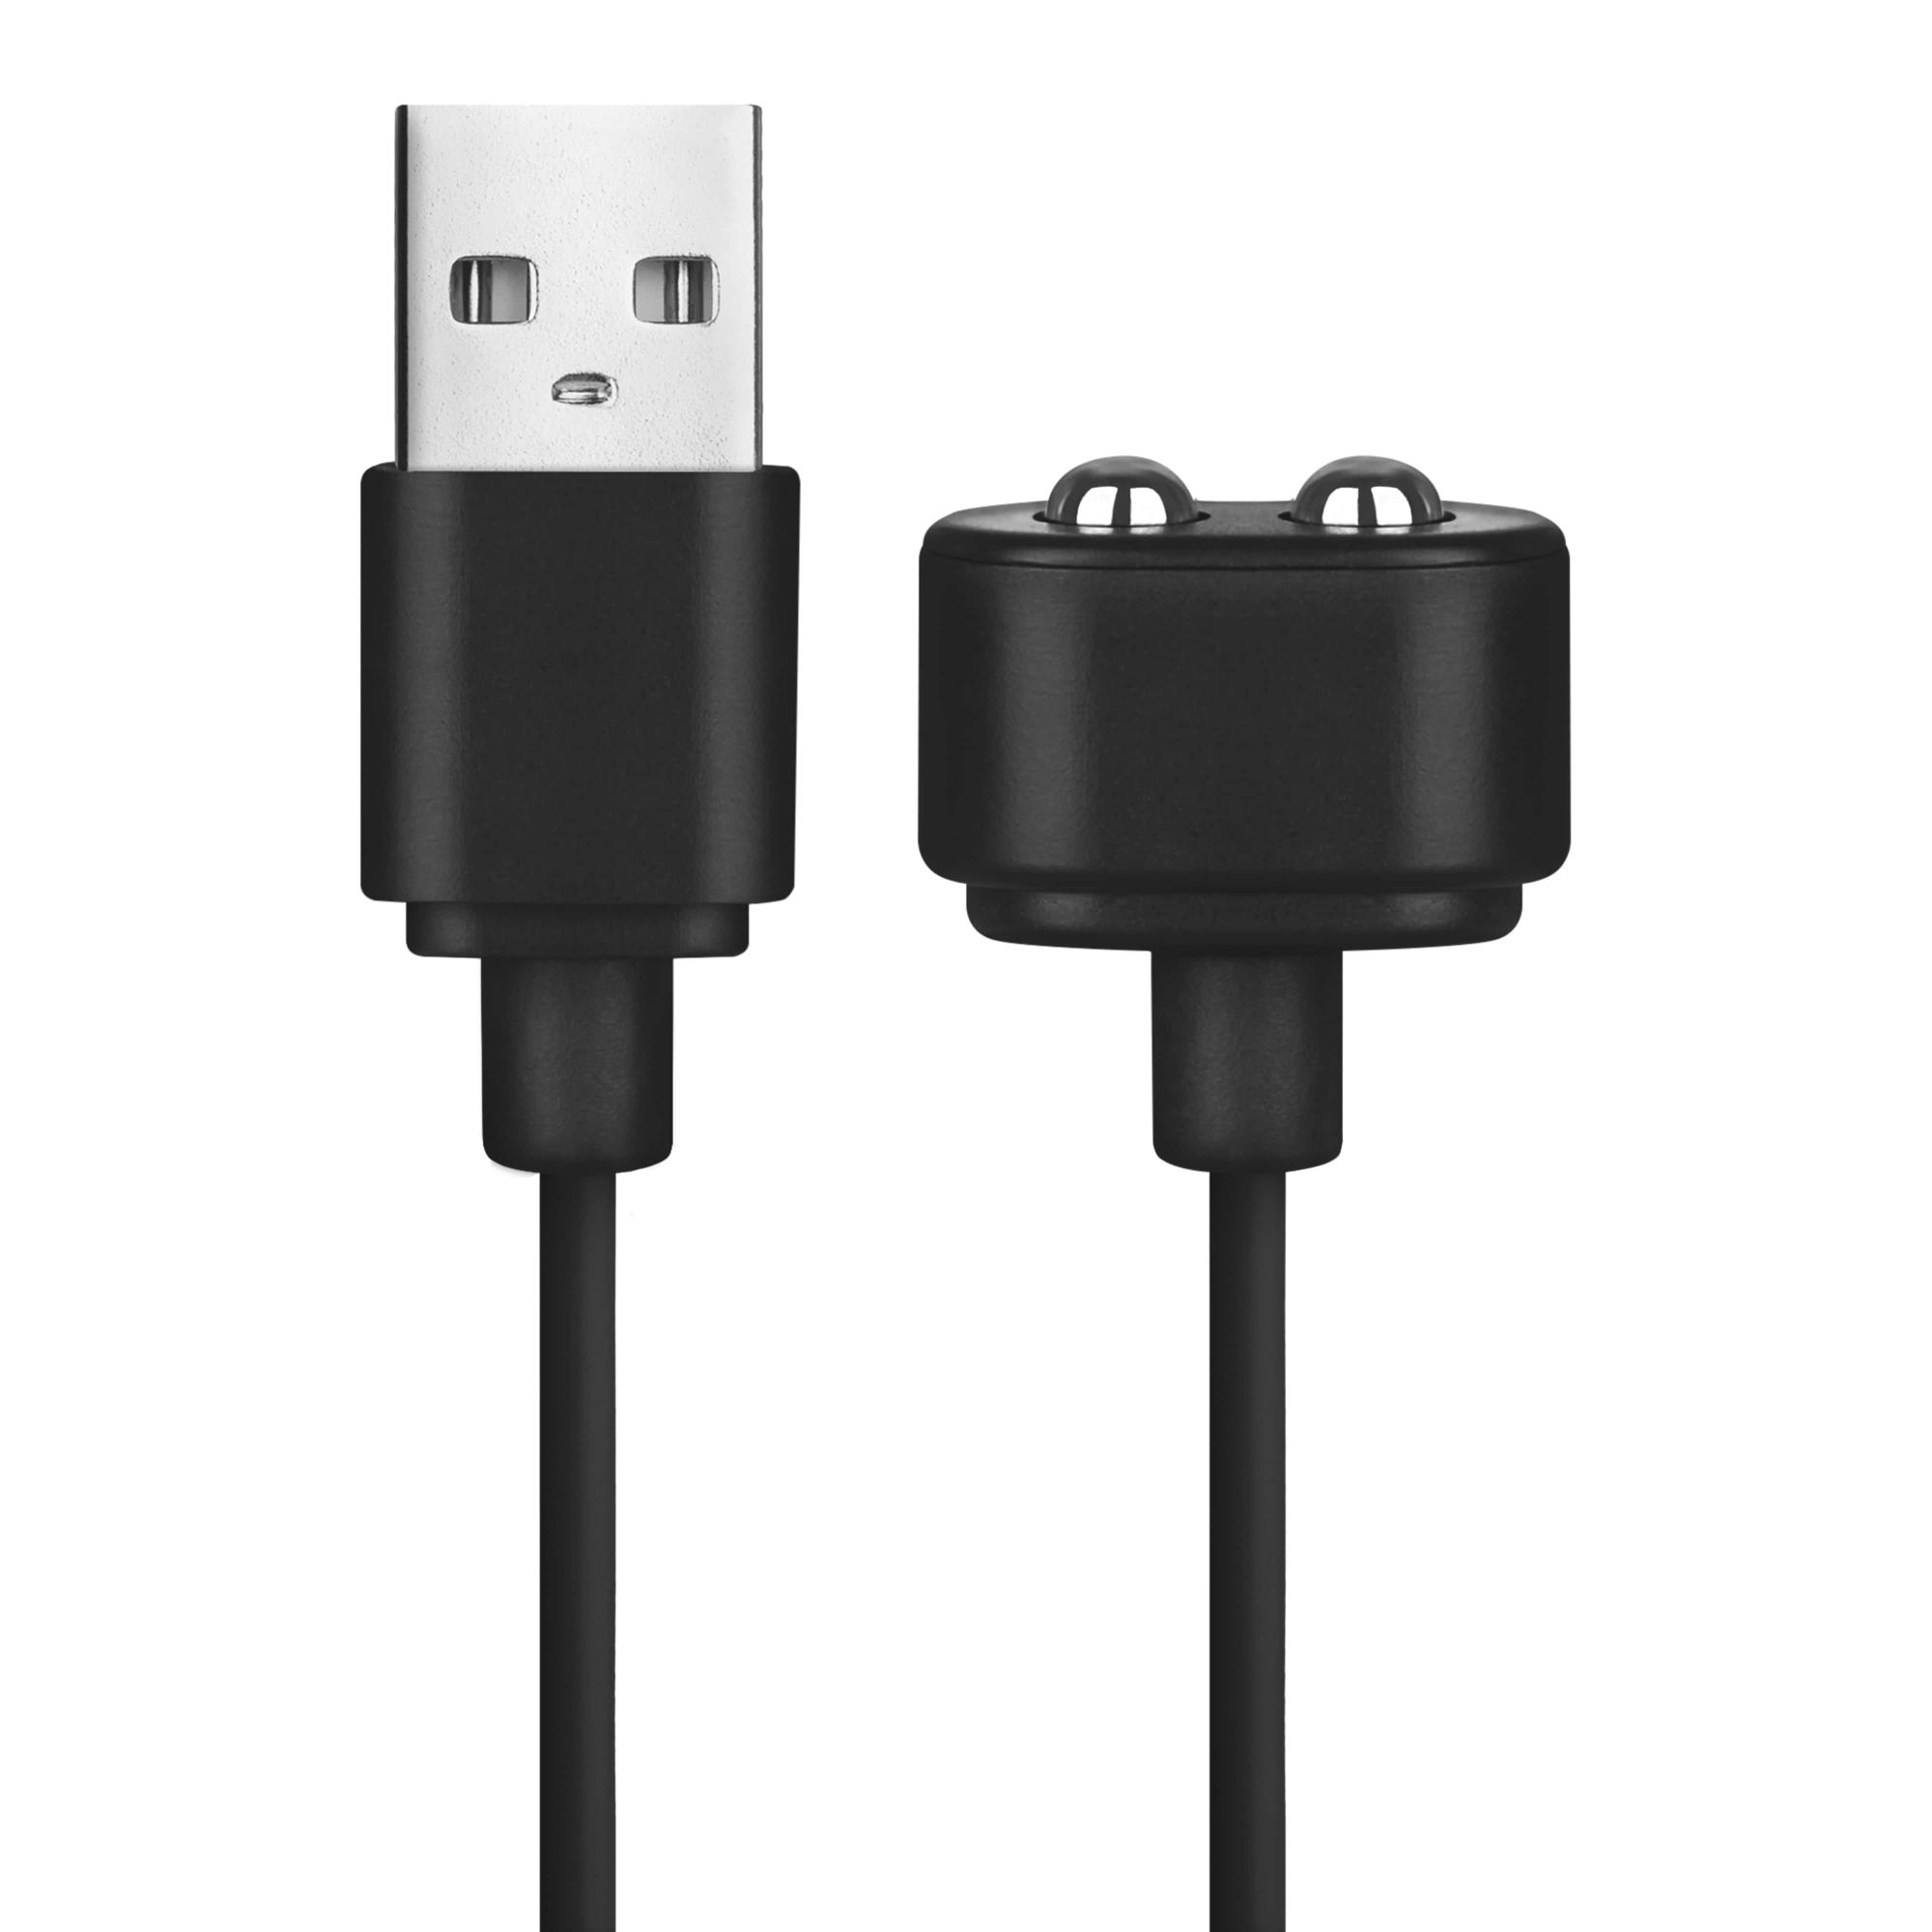 Satisfyer USB Charging Cable white кабель для зарядки для вибромассажеров Satisfyer, 110 см (чёрный) - фото 1